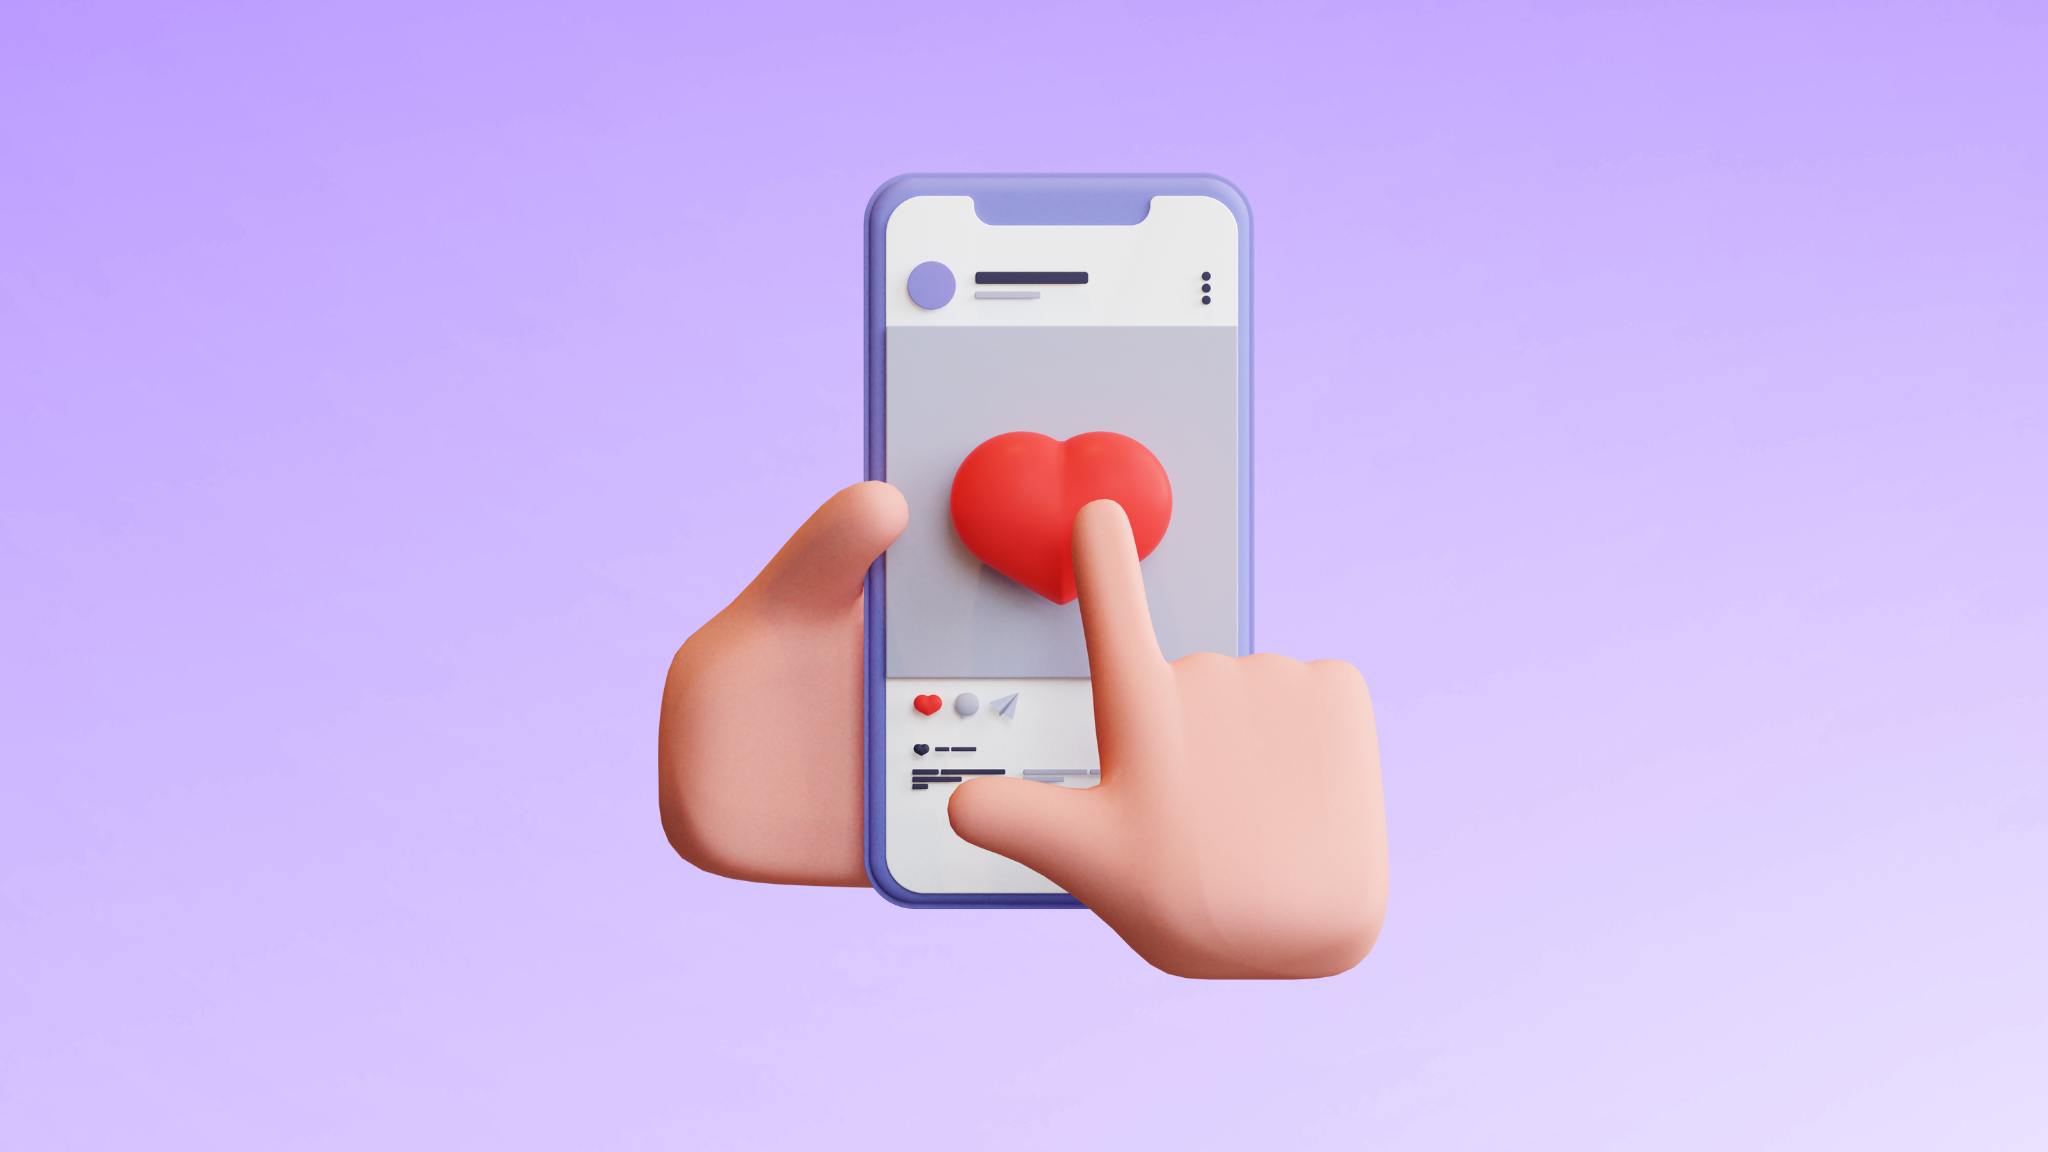 Mobiltelefon med en bild på ett hjärta på skärmen, en hand pekar på hjärtat